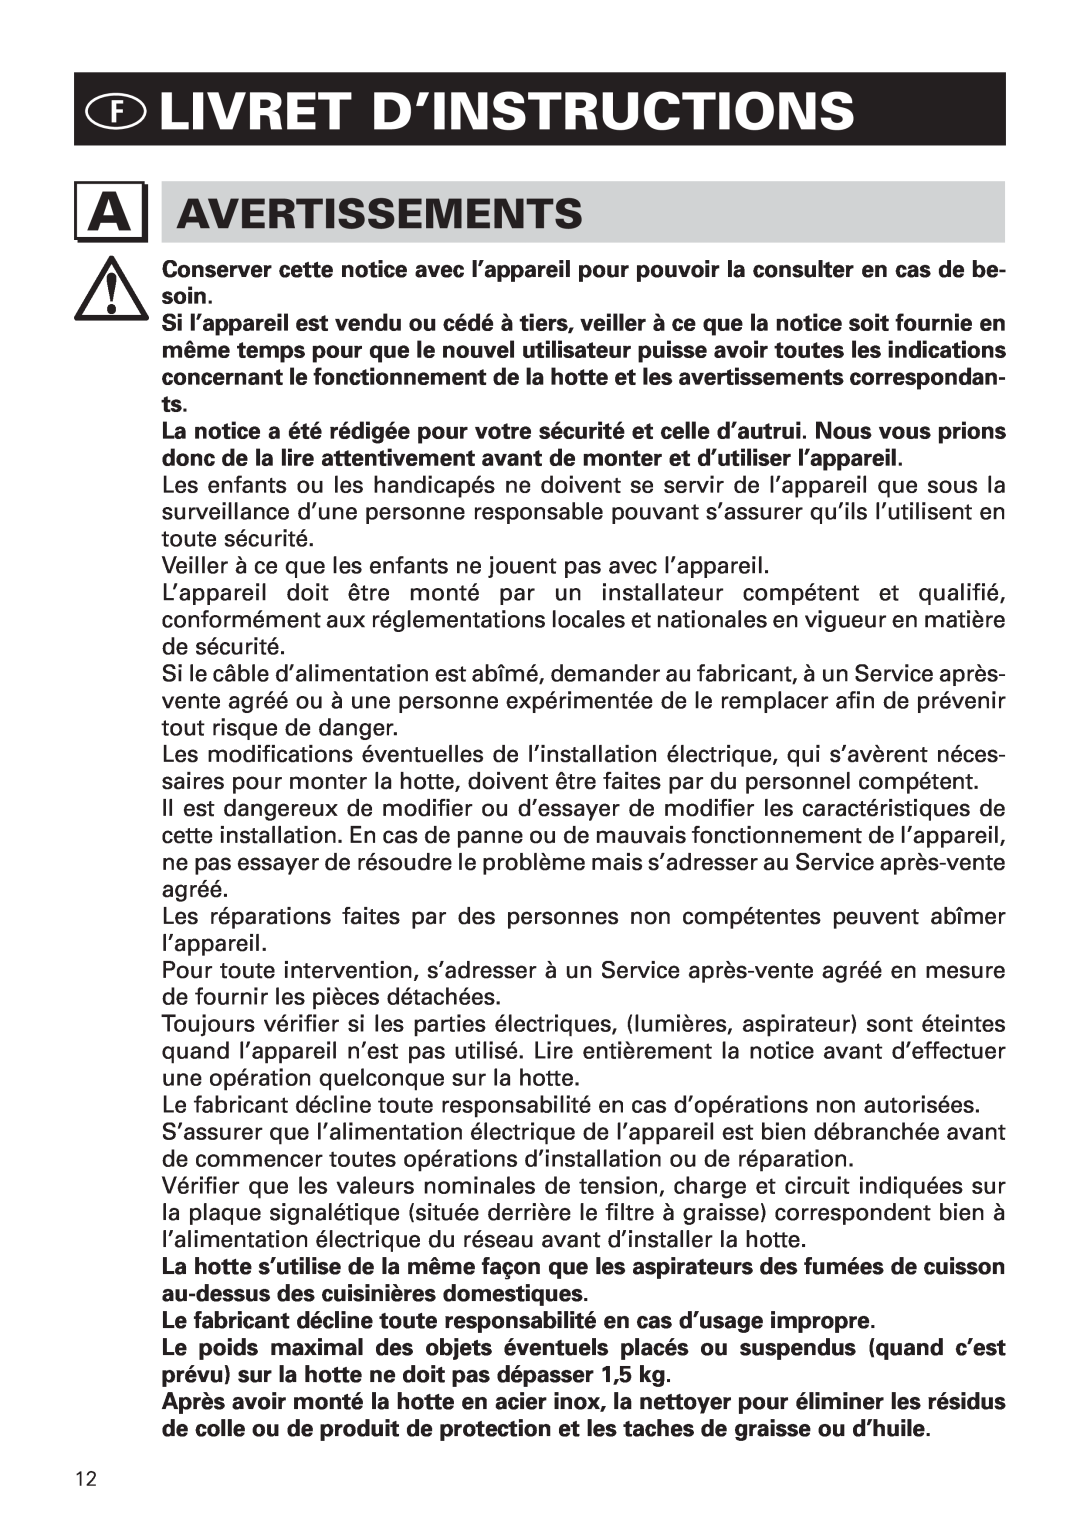 Bertazzoni KIN 30 PER X, KIN 36 PER X manual Flivret D’Instructions, Avertissements 